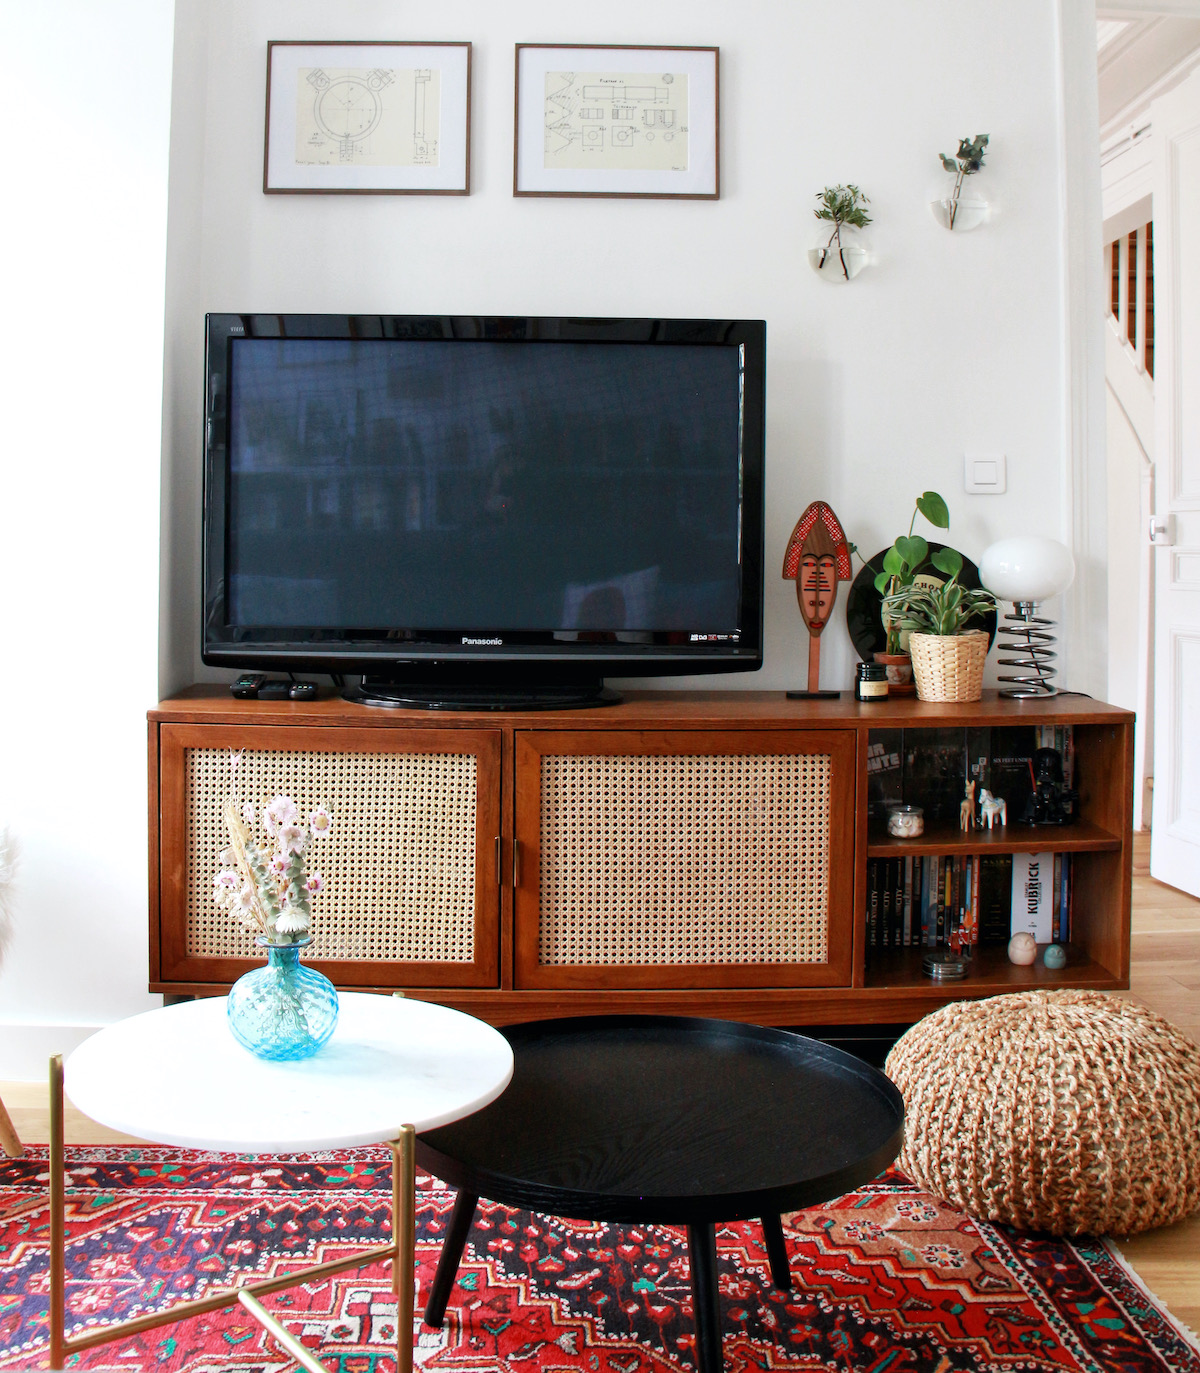 salon meuble tv cannage en bois tapis ethnique rouge table basse ronde